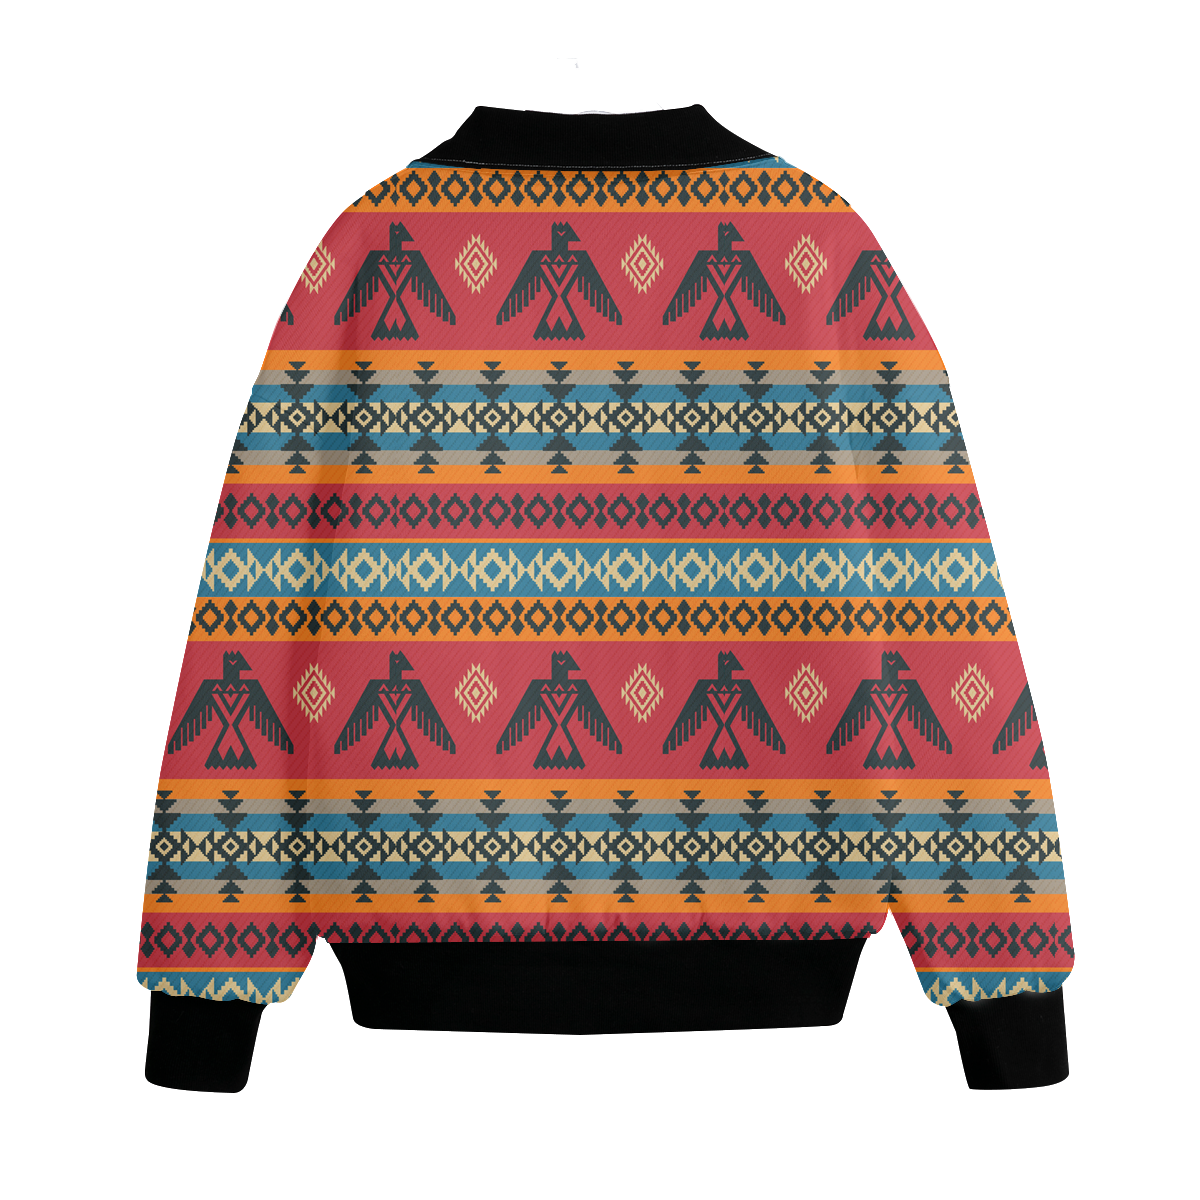 Powwow Storegb nat00029 pattern native american unisex knitted fleece lapel outwear